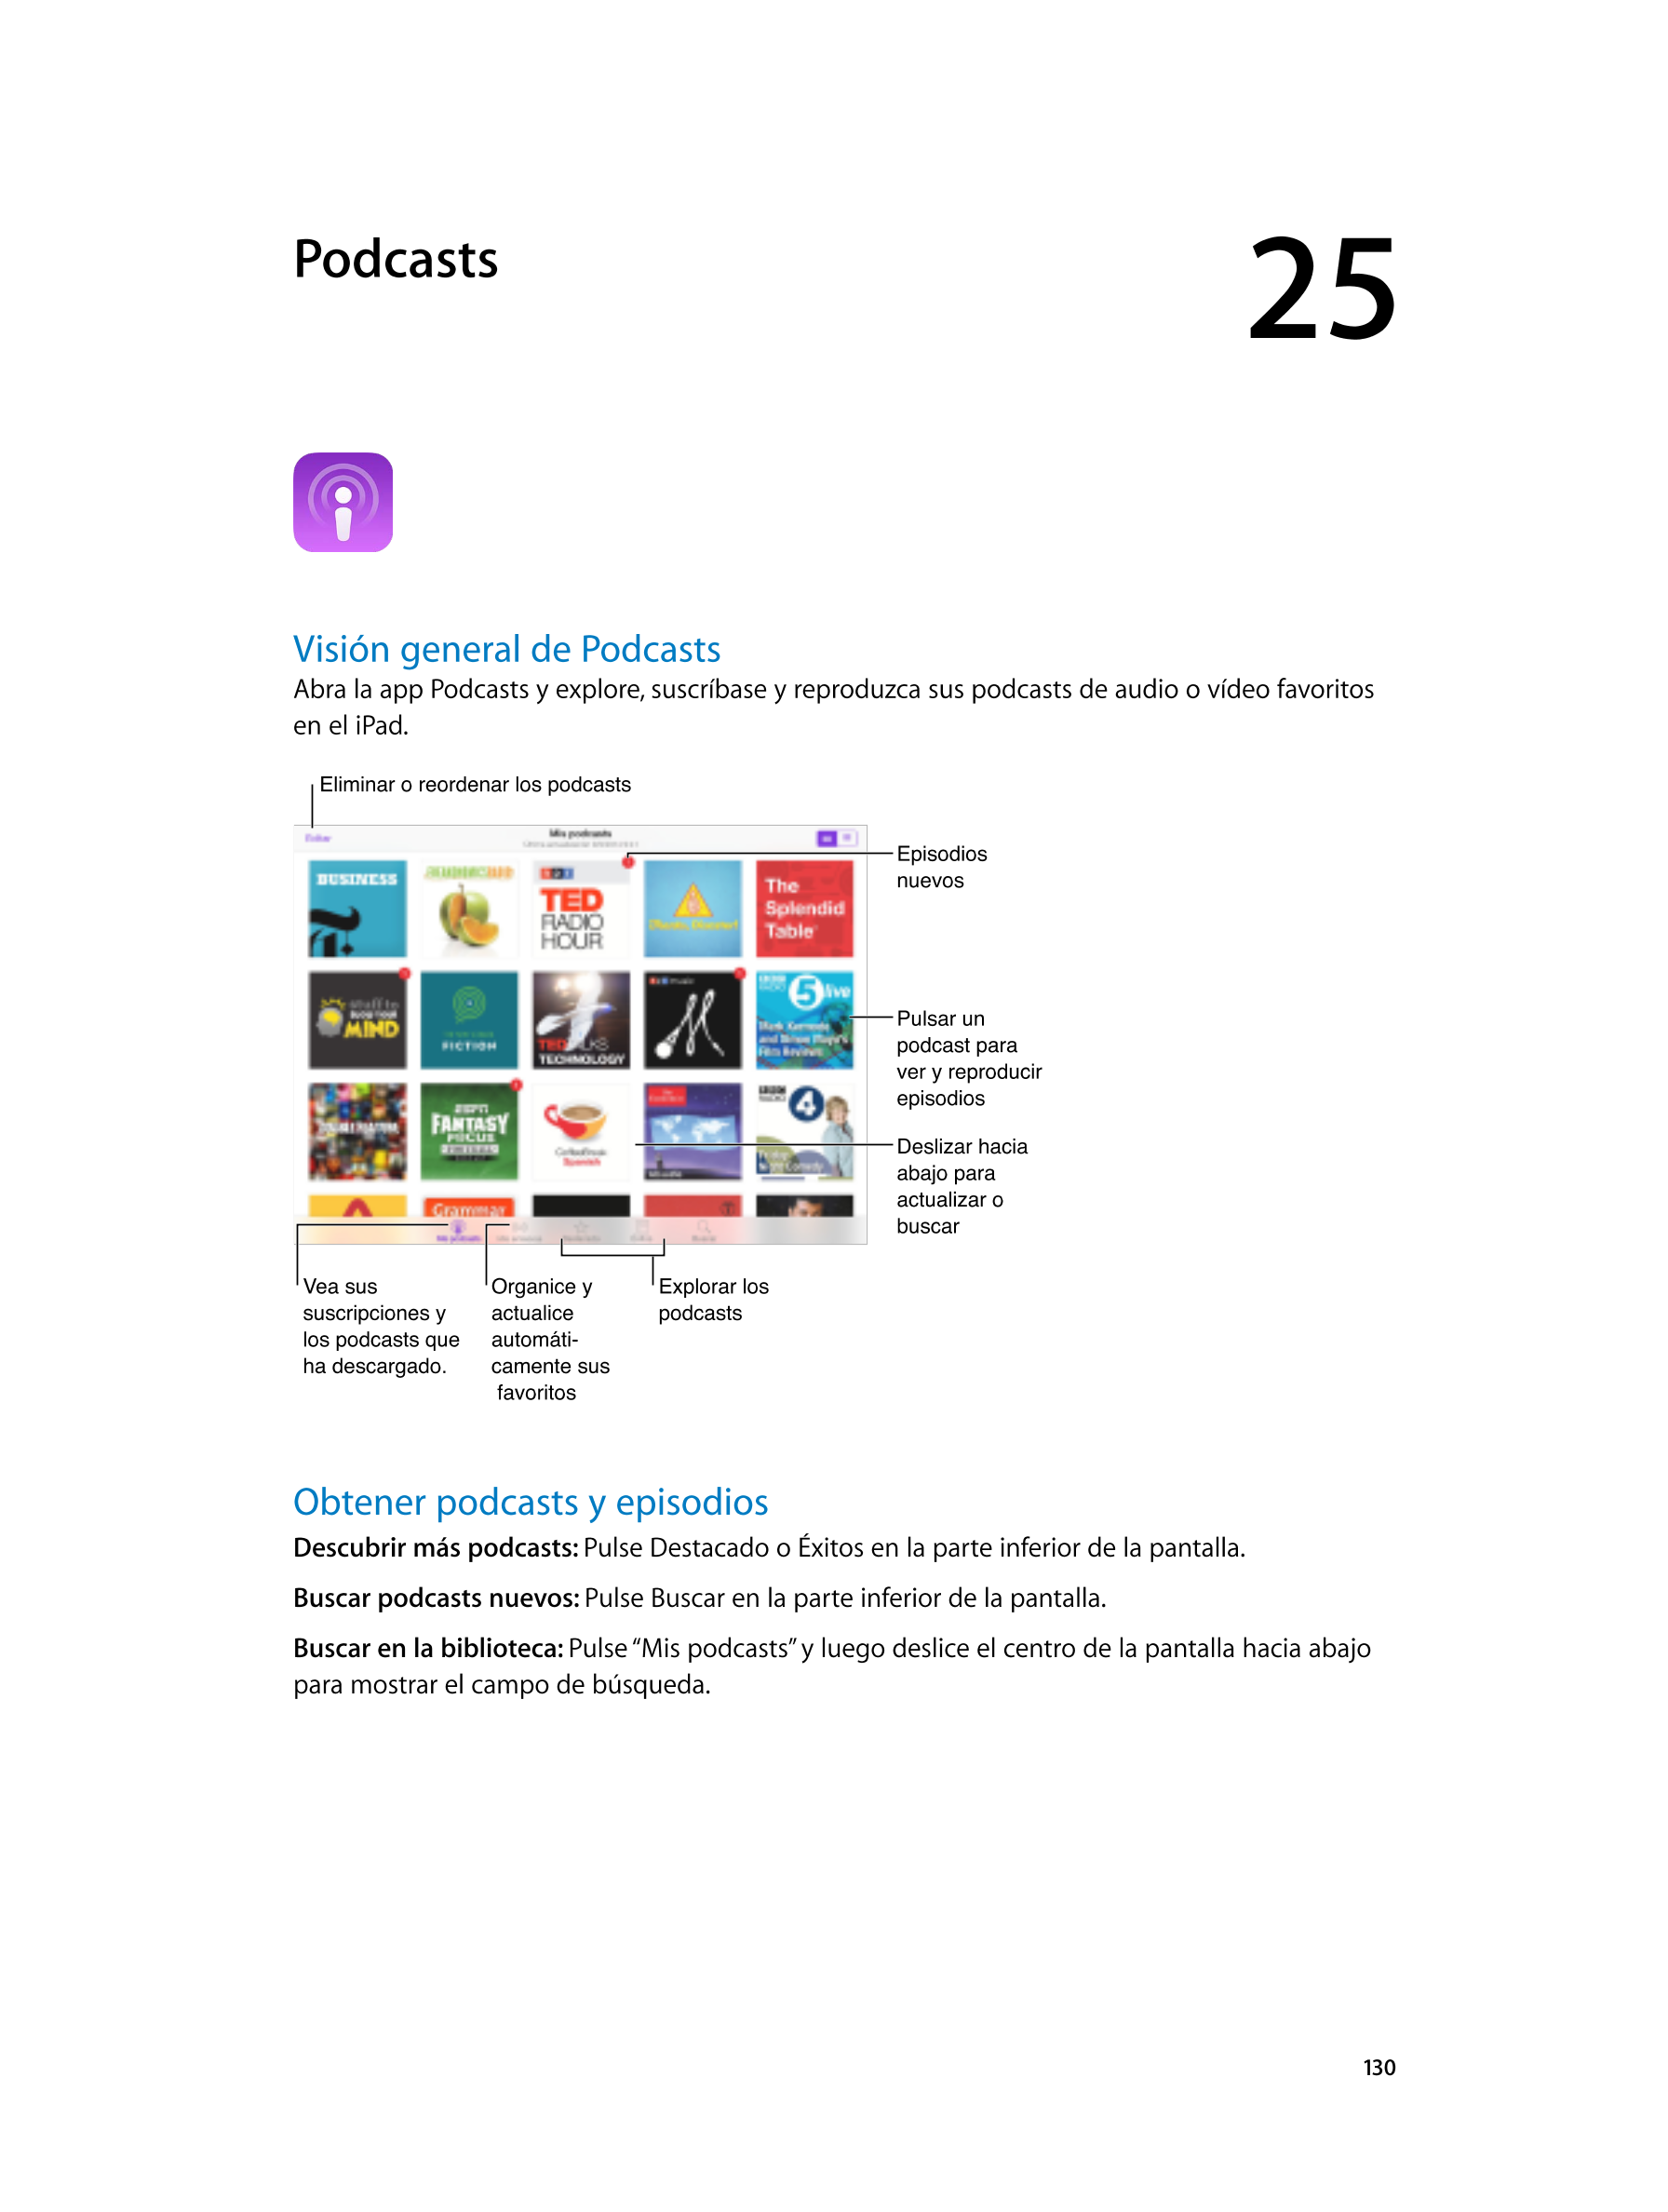  Podcasts 25  
Visión general de Podcasts
Abra la app Podcasts y explore, suscríbase y reproduzca sus podcasts de audio o vídeo 